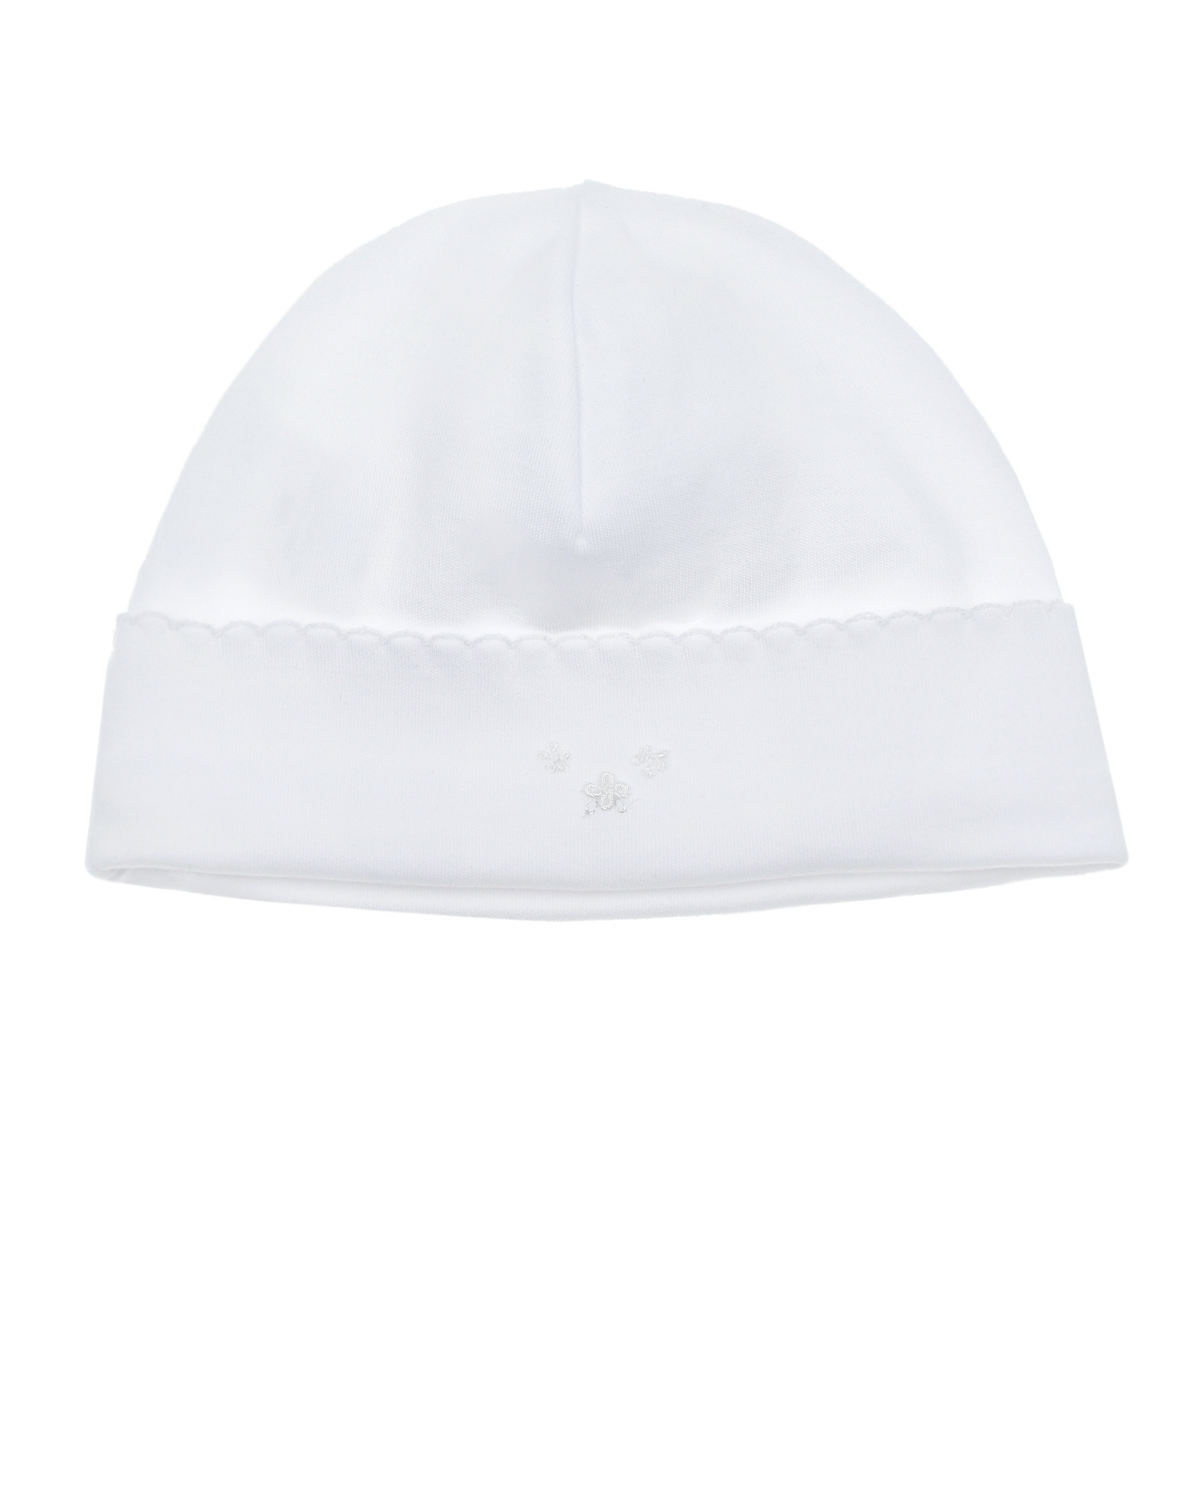 Купить Белая шапка с цветочной вышивкой Lyda Baby детская, Белый, 100%хлопок